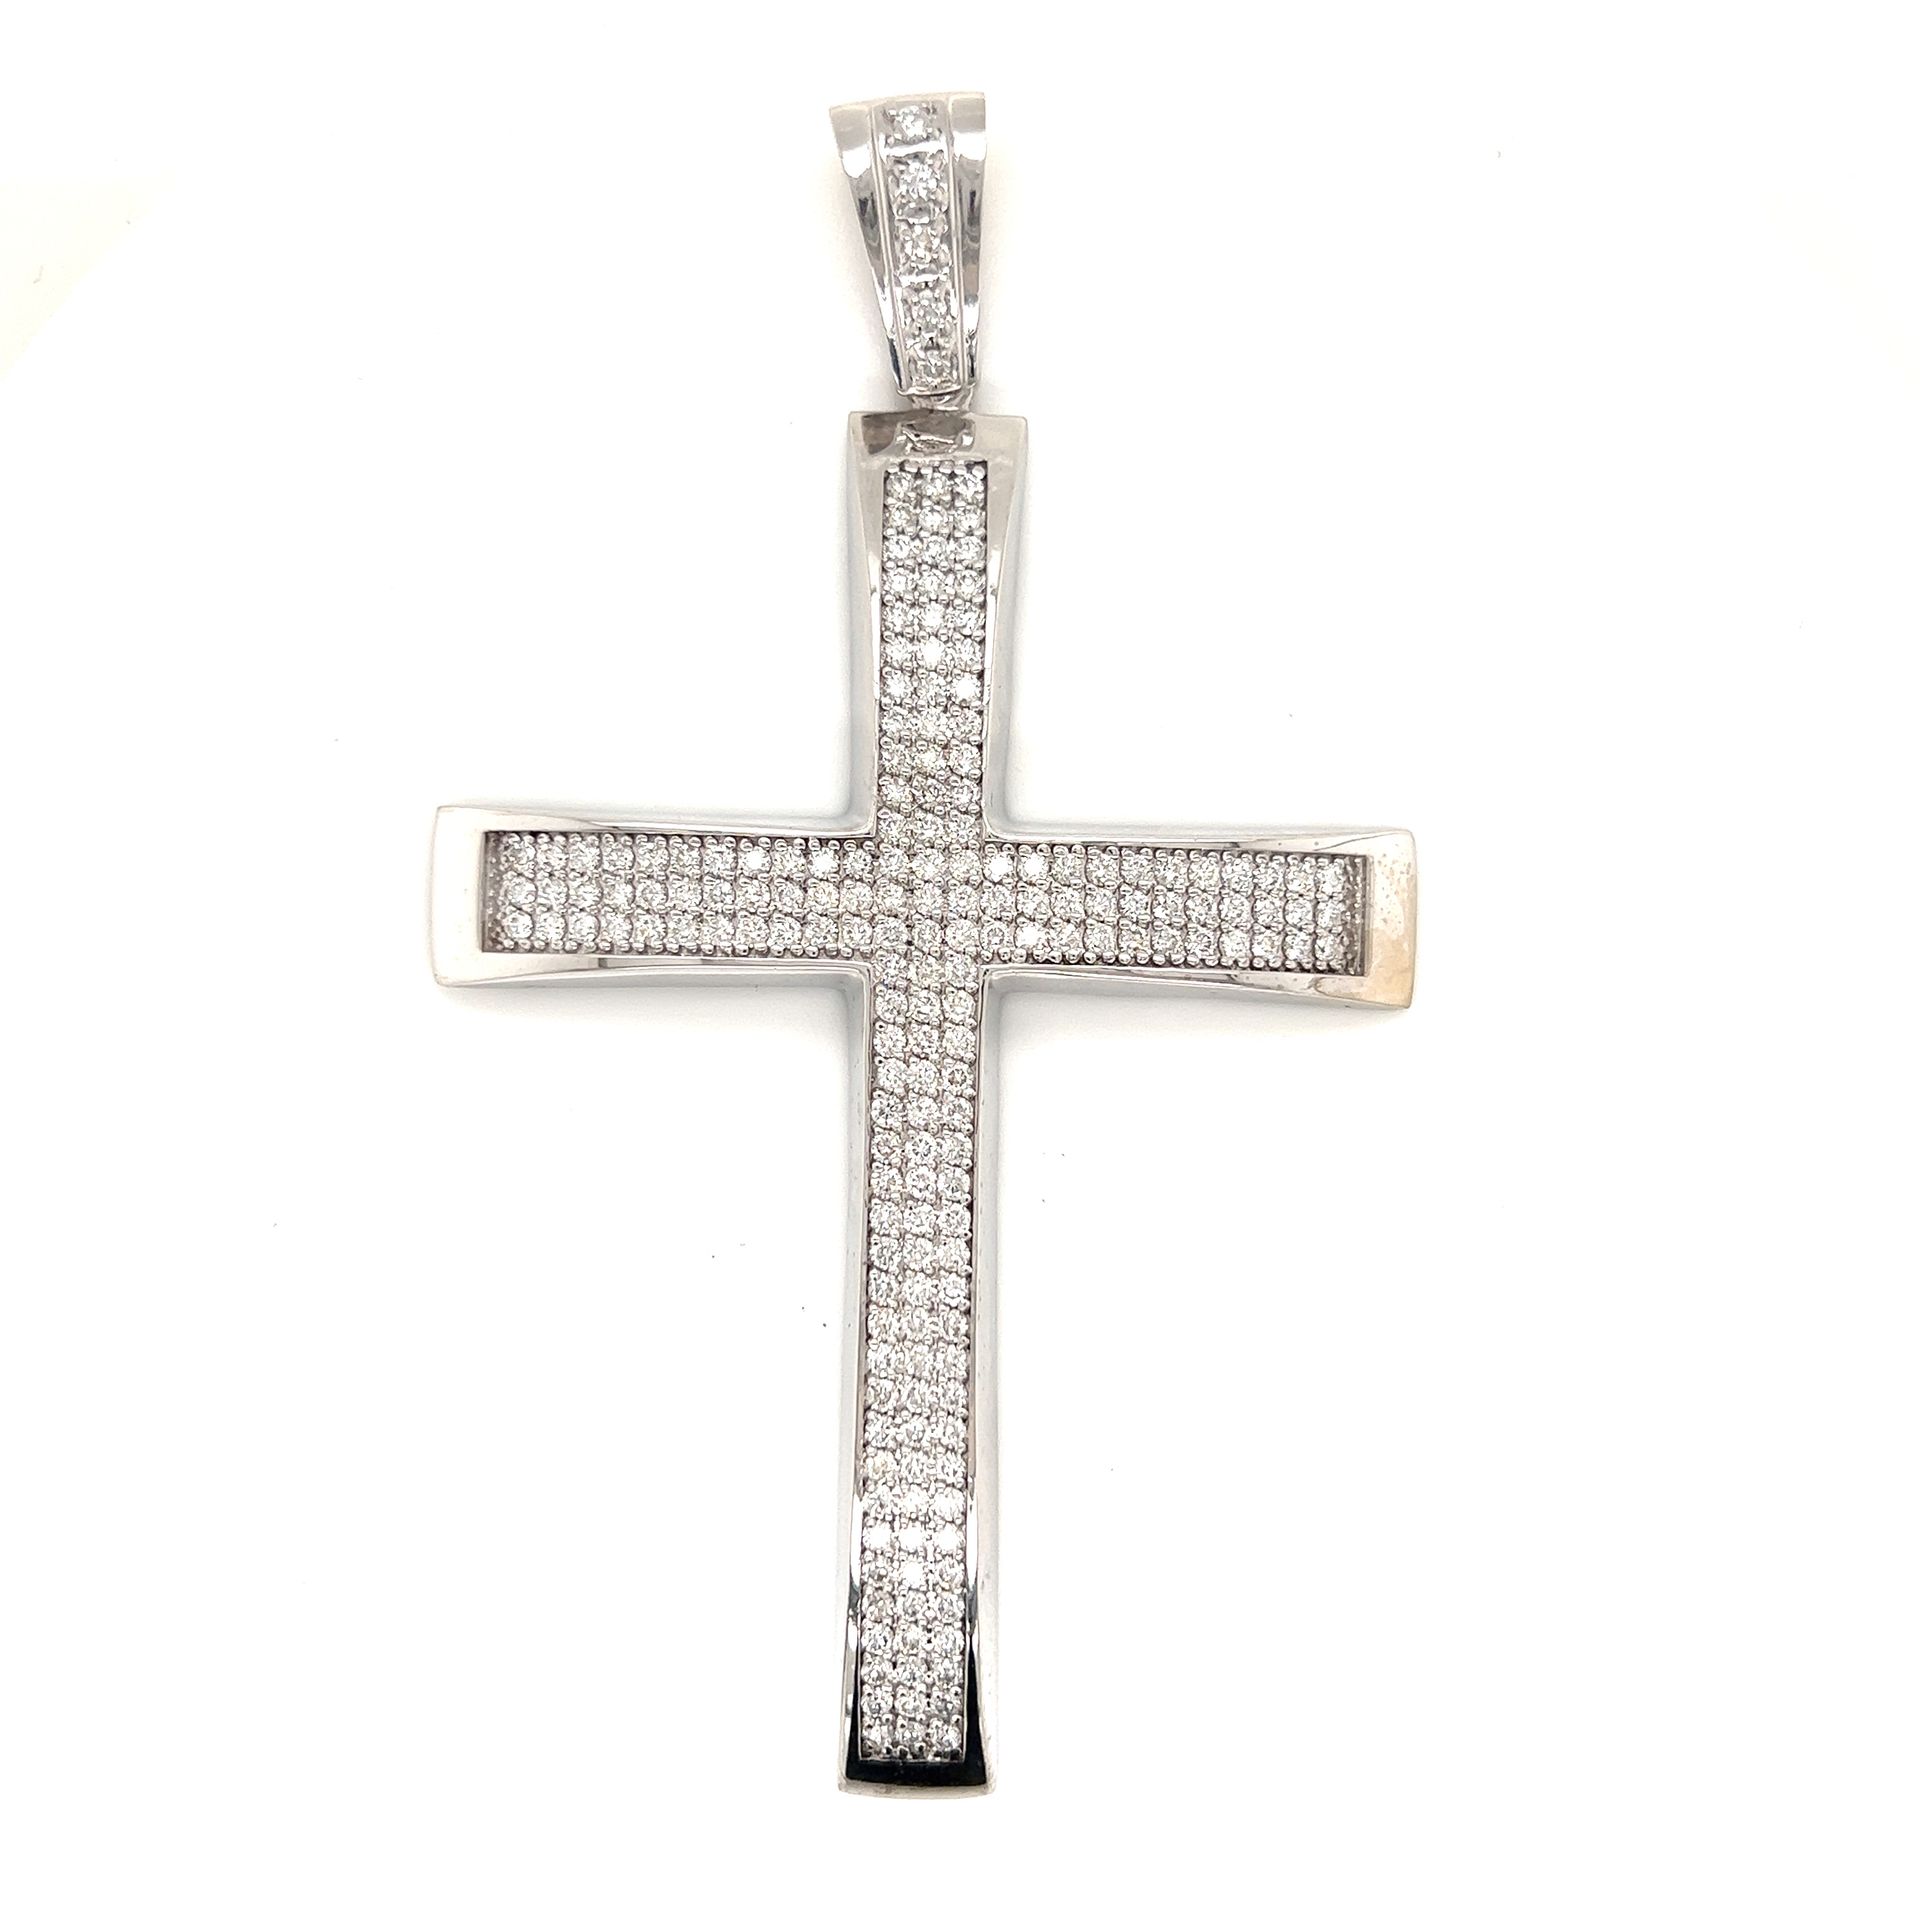 10k Diamond Cross Pendant 10k白金 重量36.28g 钻石约4.6ct 十字吊坠尺寸4.2 "x2.46"